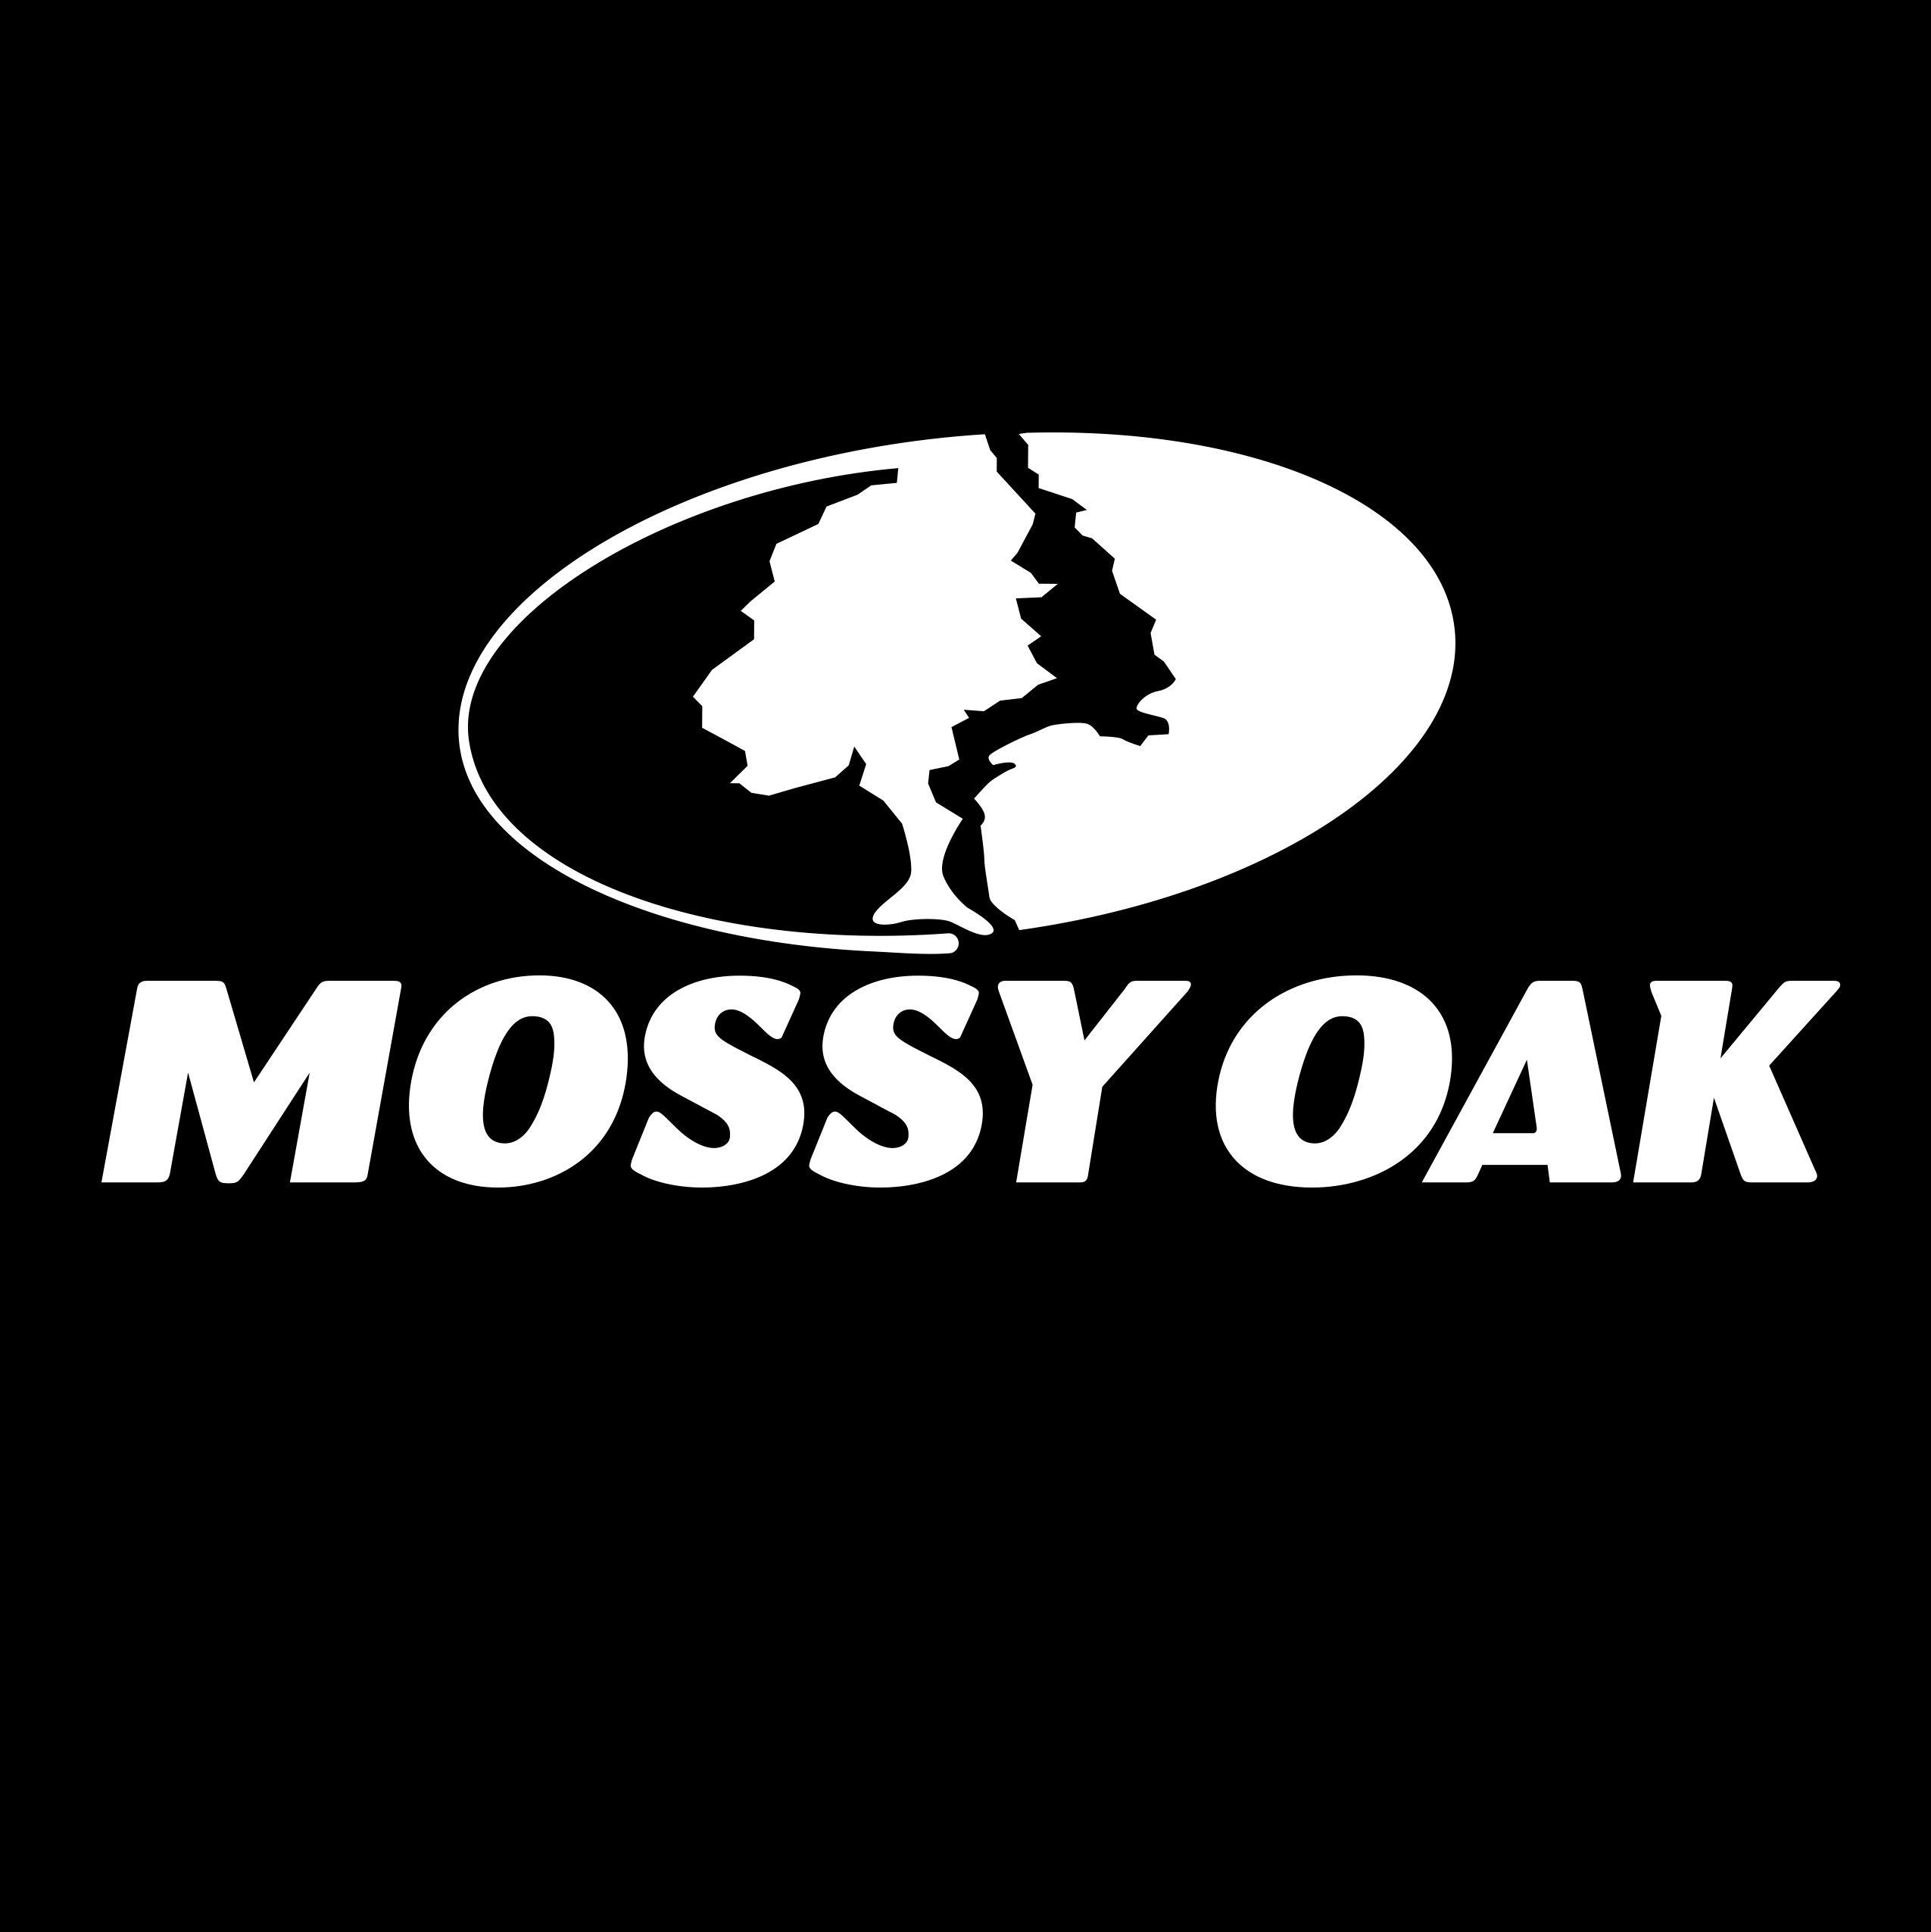 Mossy Oak Logo - Make a Mossy Oak Pumpkin | Mossy Oak